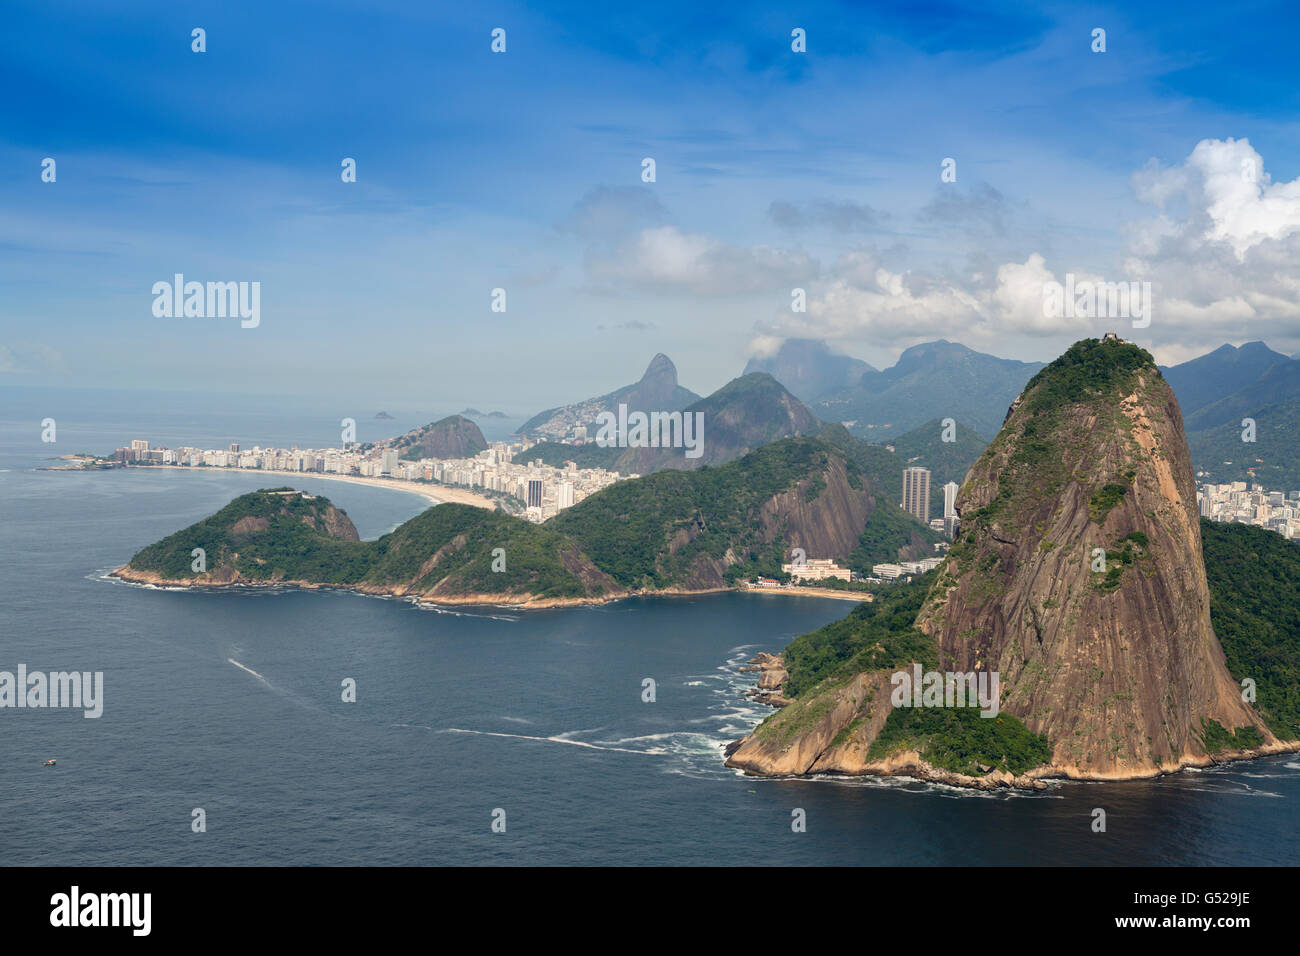 Vue aérienne de la baie de Guanabara, le pain de sucre et la ville de Rio de Janeiro Banque D'Images